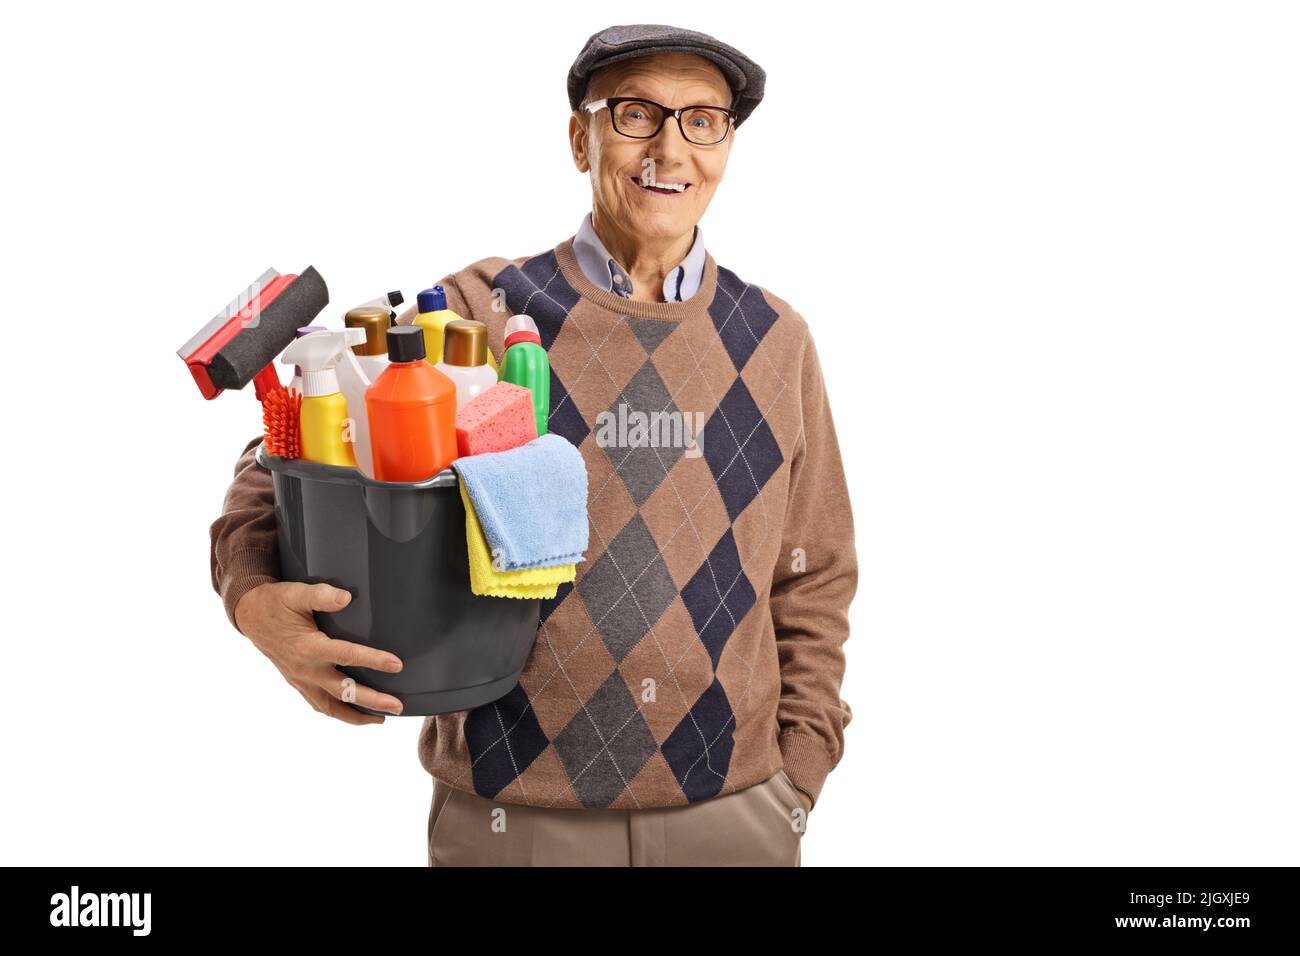 Uomo anziano che tiene un secchio con i rifornimenti di pulizia e sorridente isolato su sfondo bianco Foto Stock